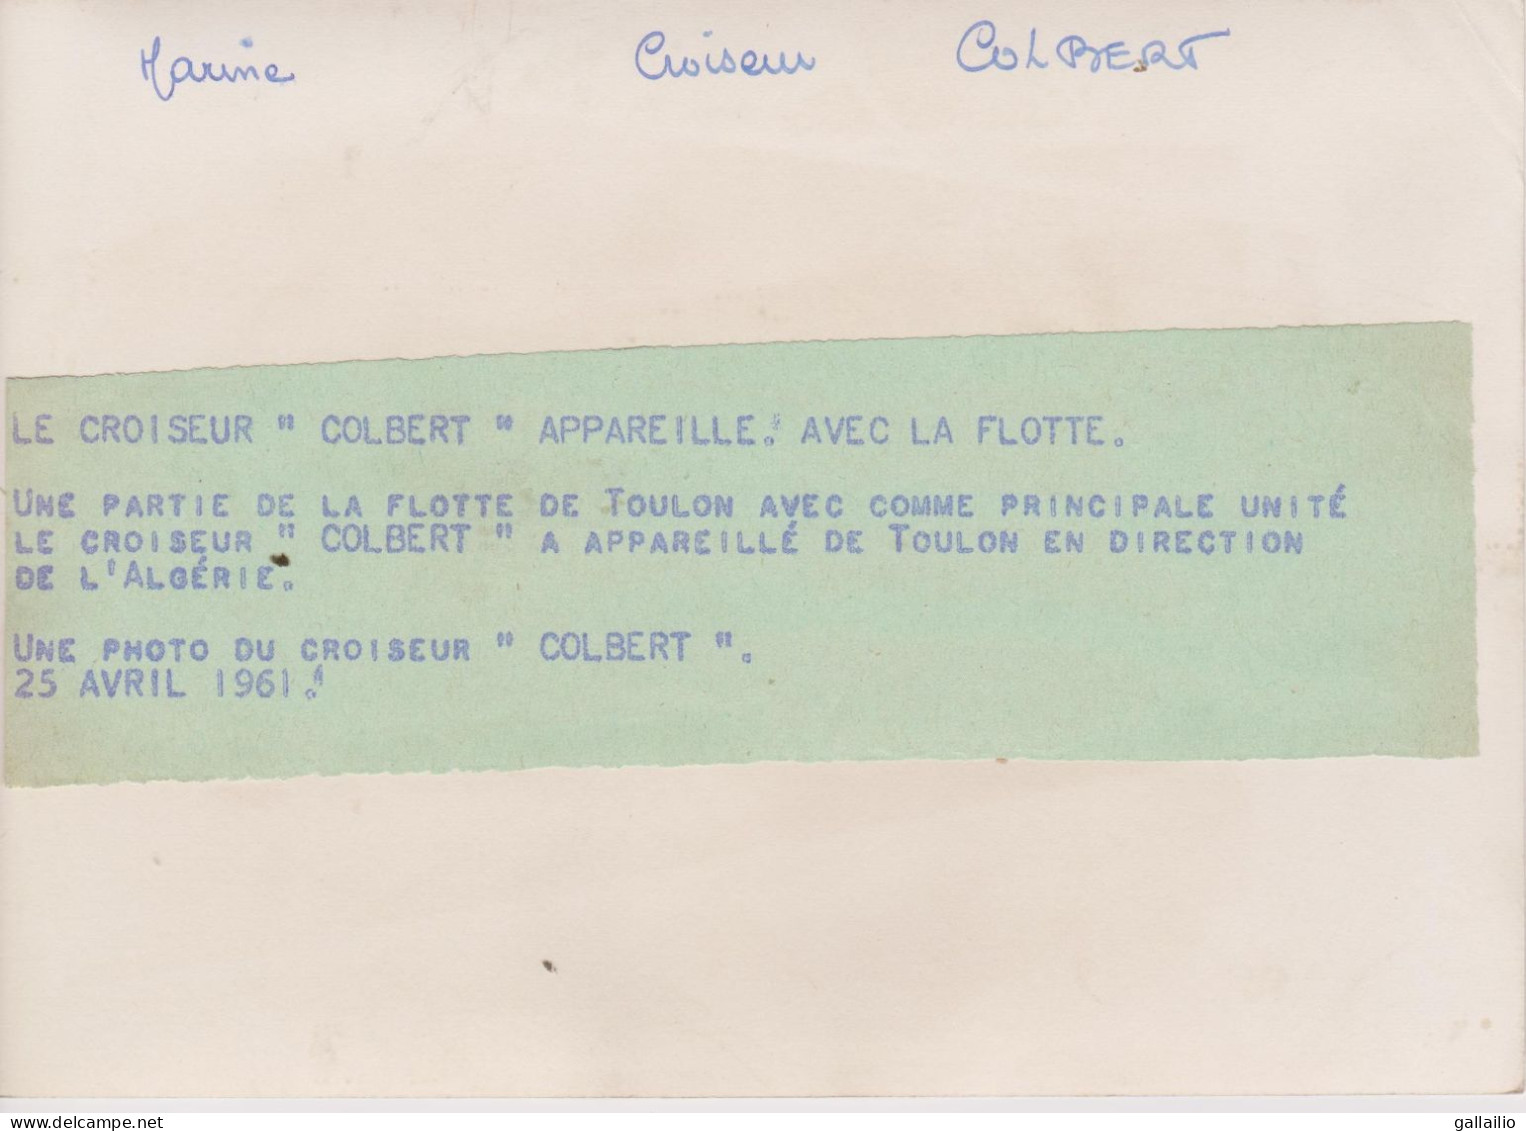 PHOTO PRESSE LE CROISEUR COLBERT EN DIRECTION DE L'ALGERIE AVRIL 1961 FORMAT 18 X 13   CMS - Boten